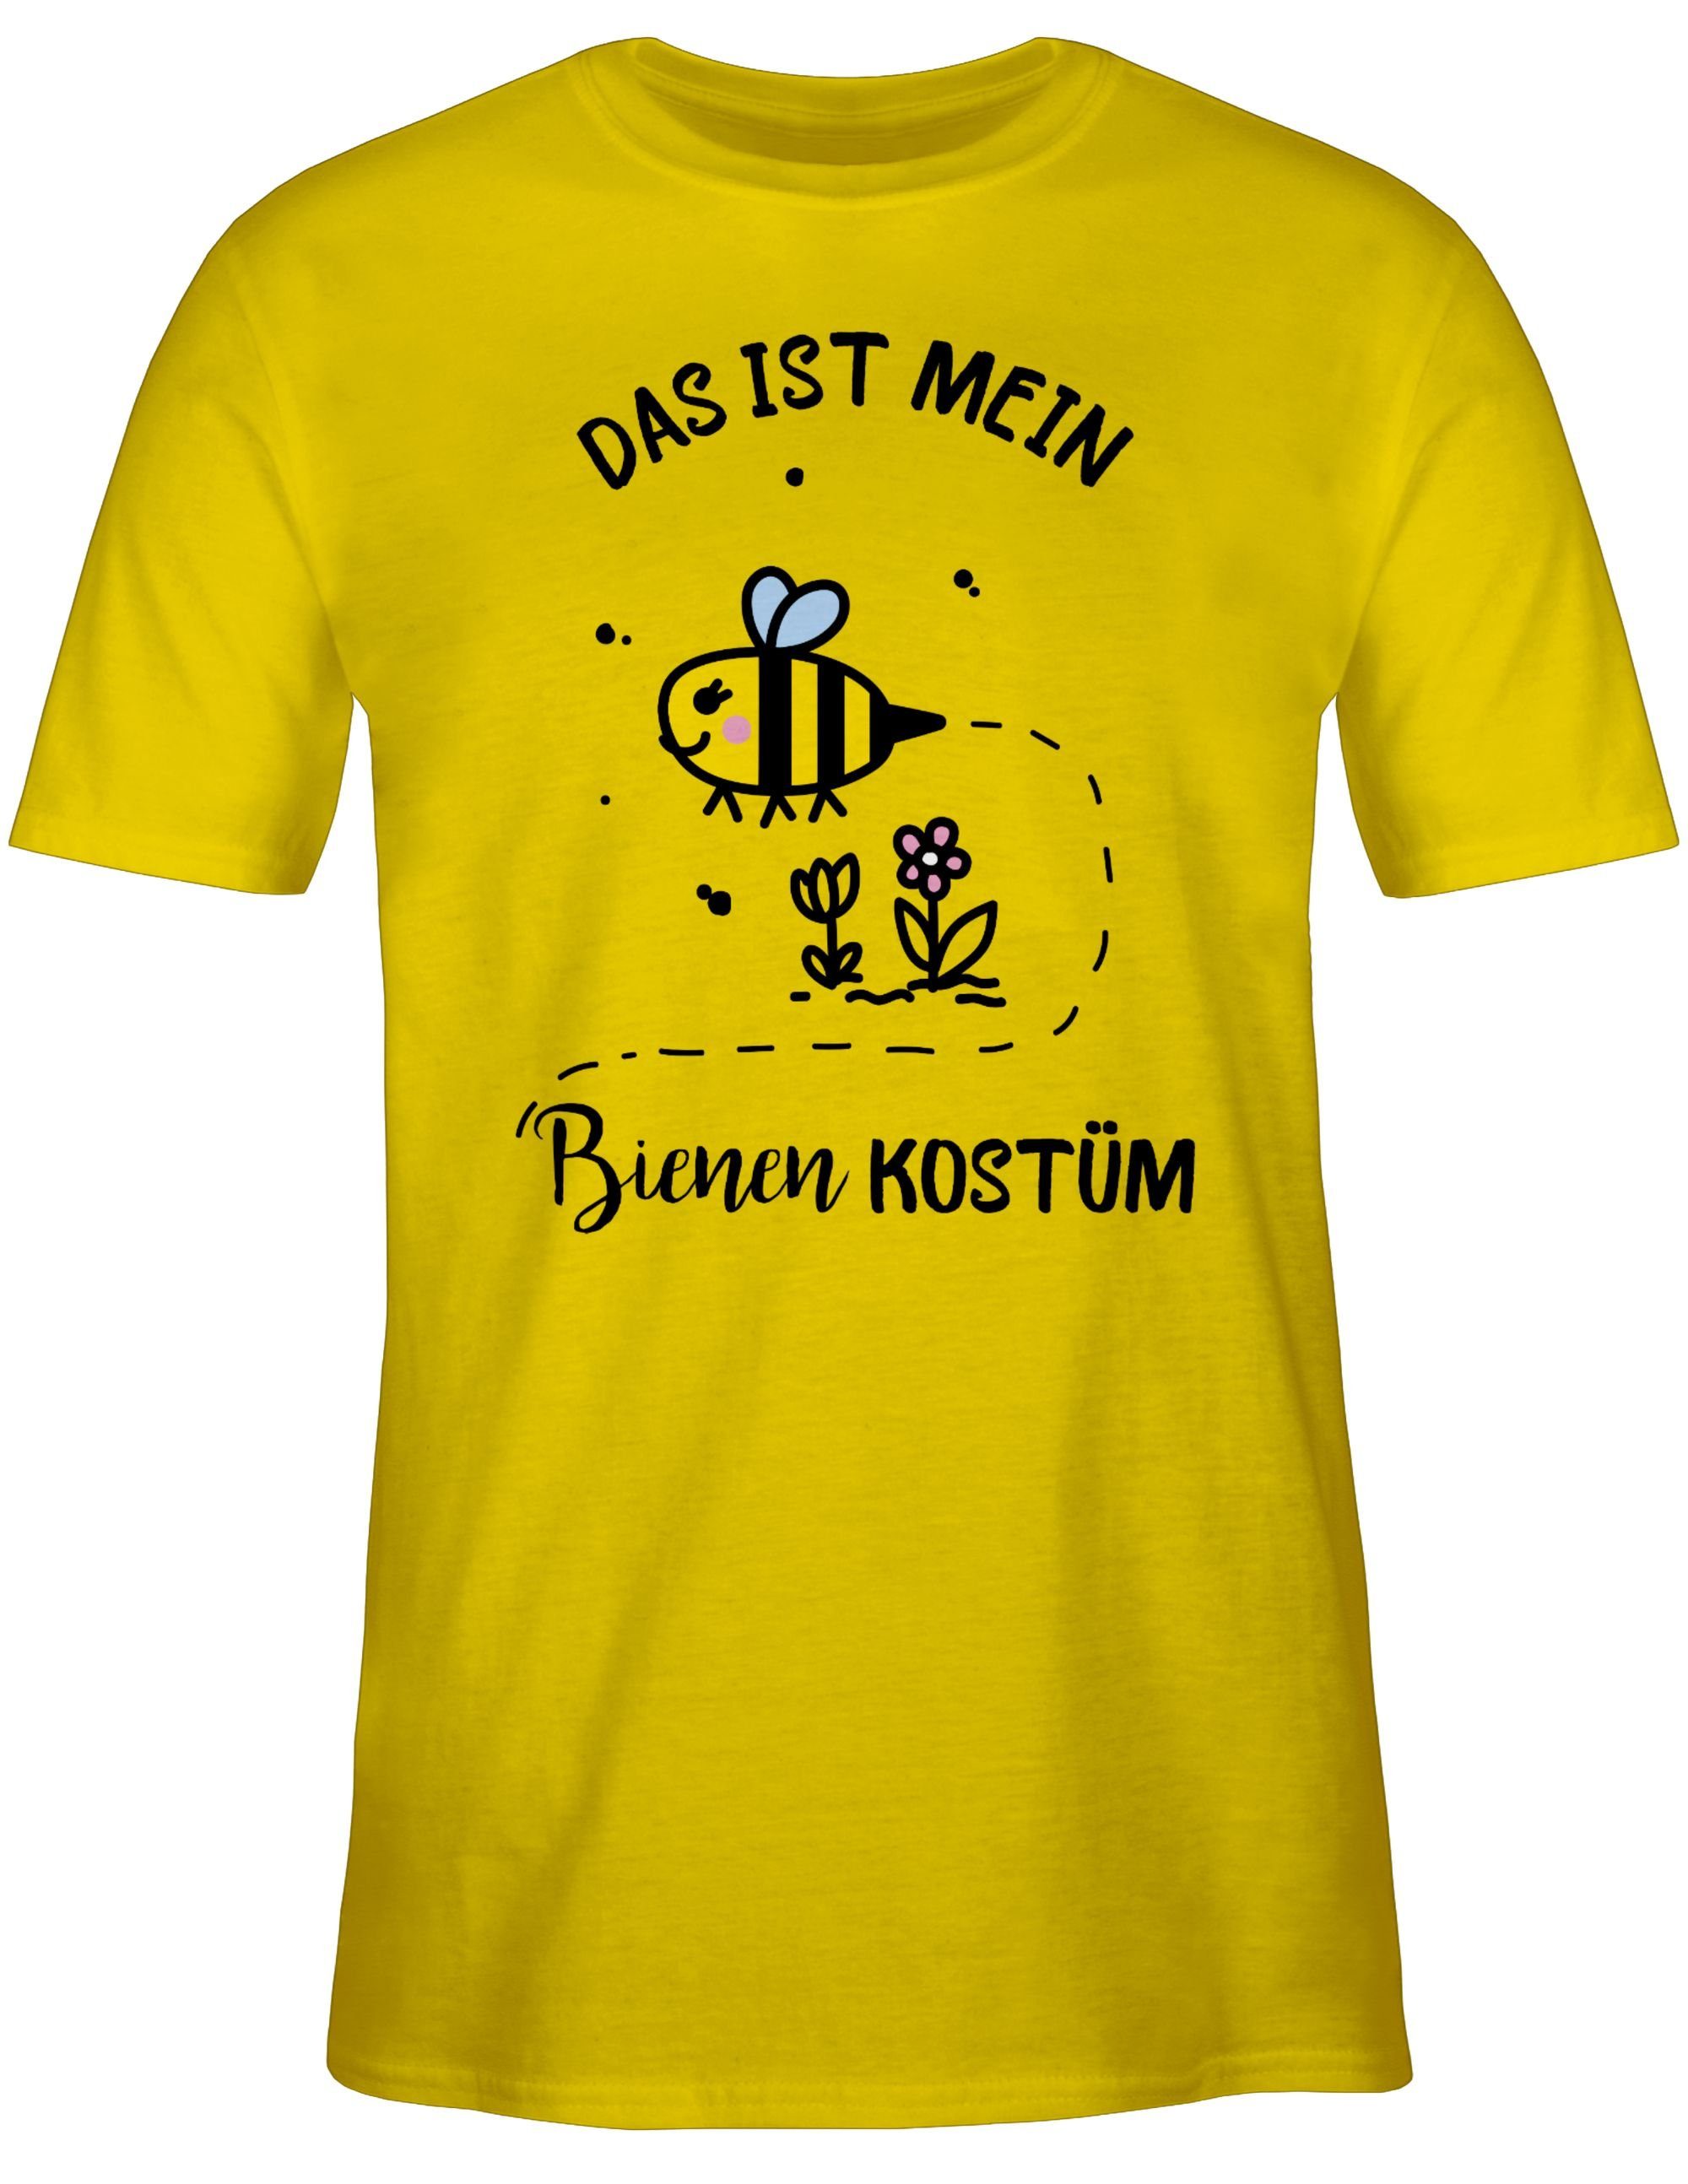 T-Shirt mein Das ist Gelb Outfit 1 Kostüm Shirtracer Karneval Bienen